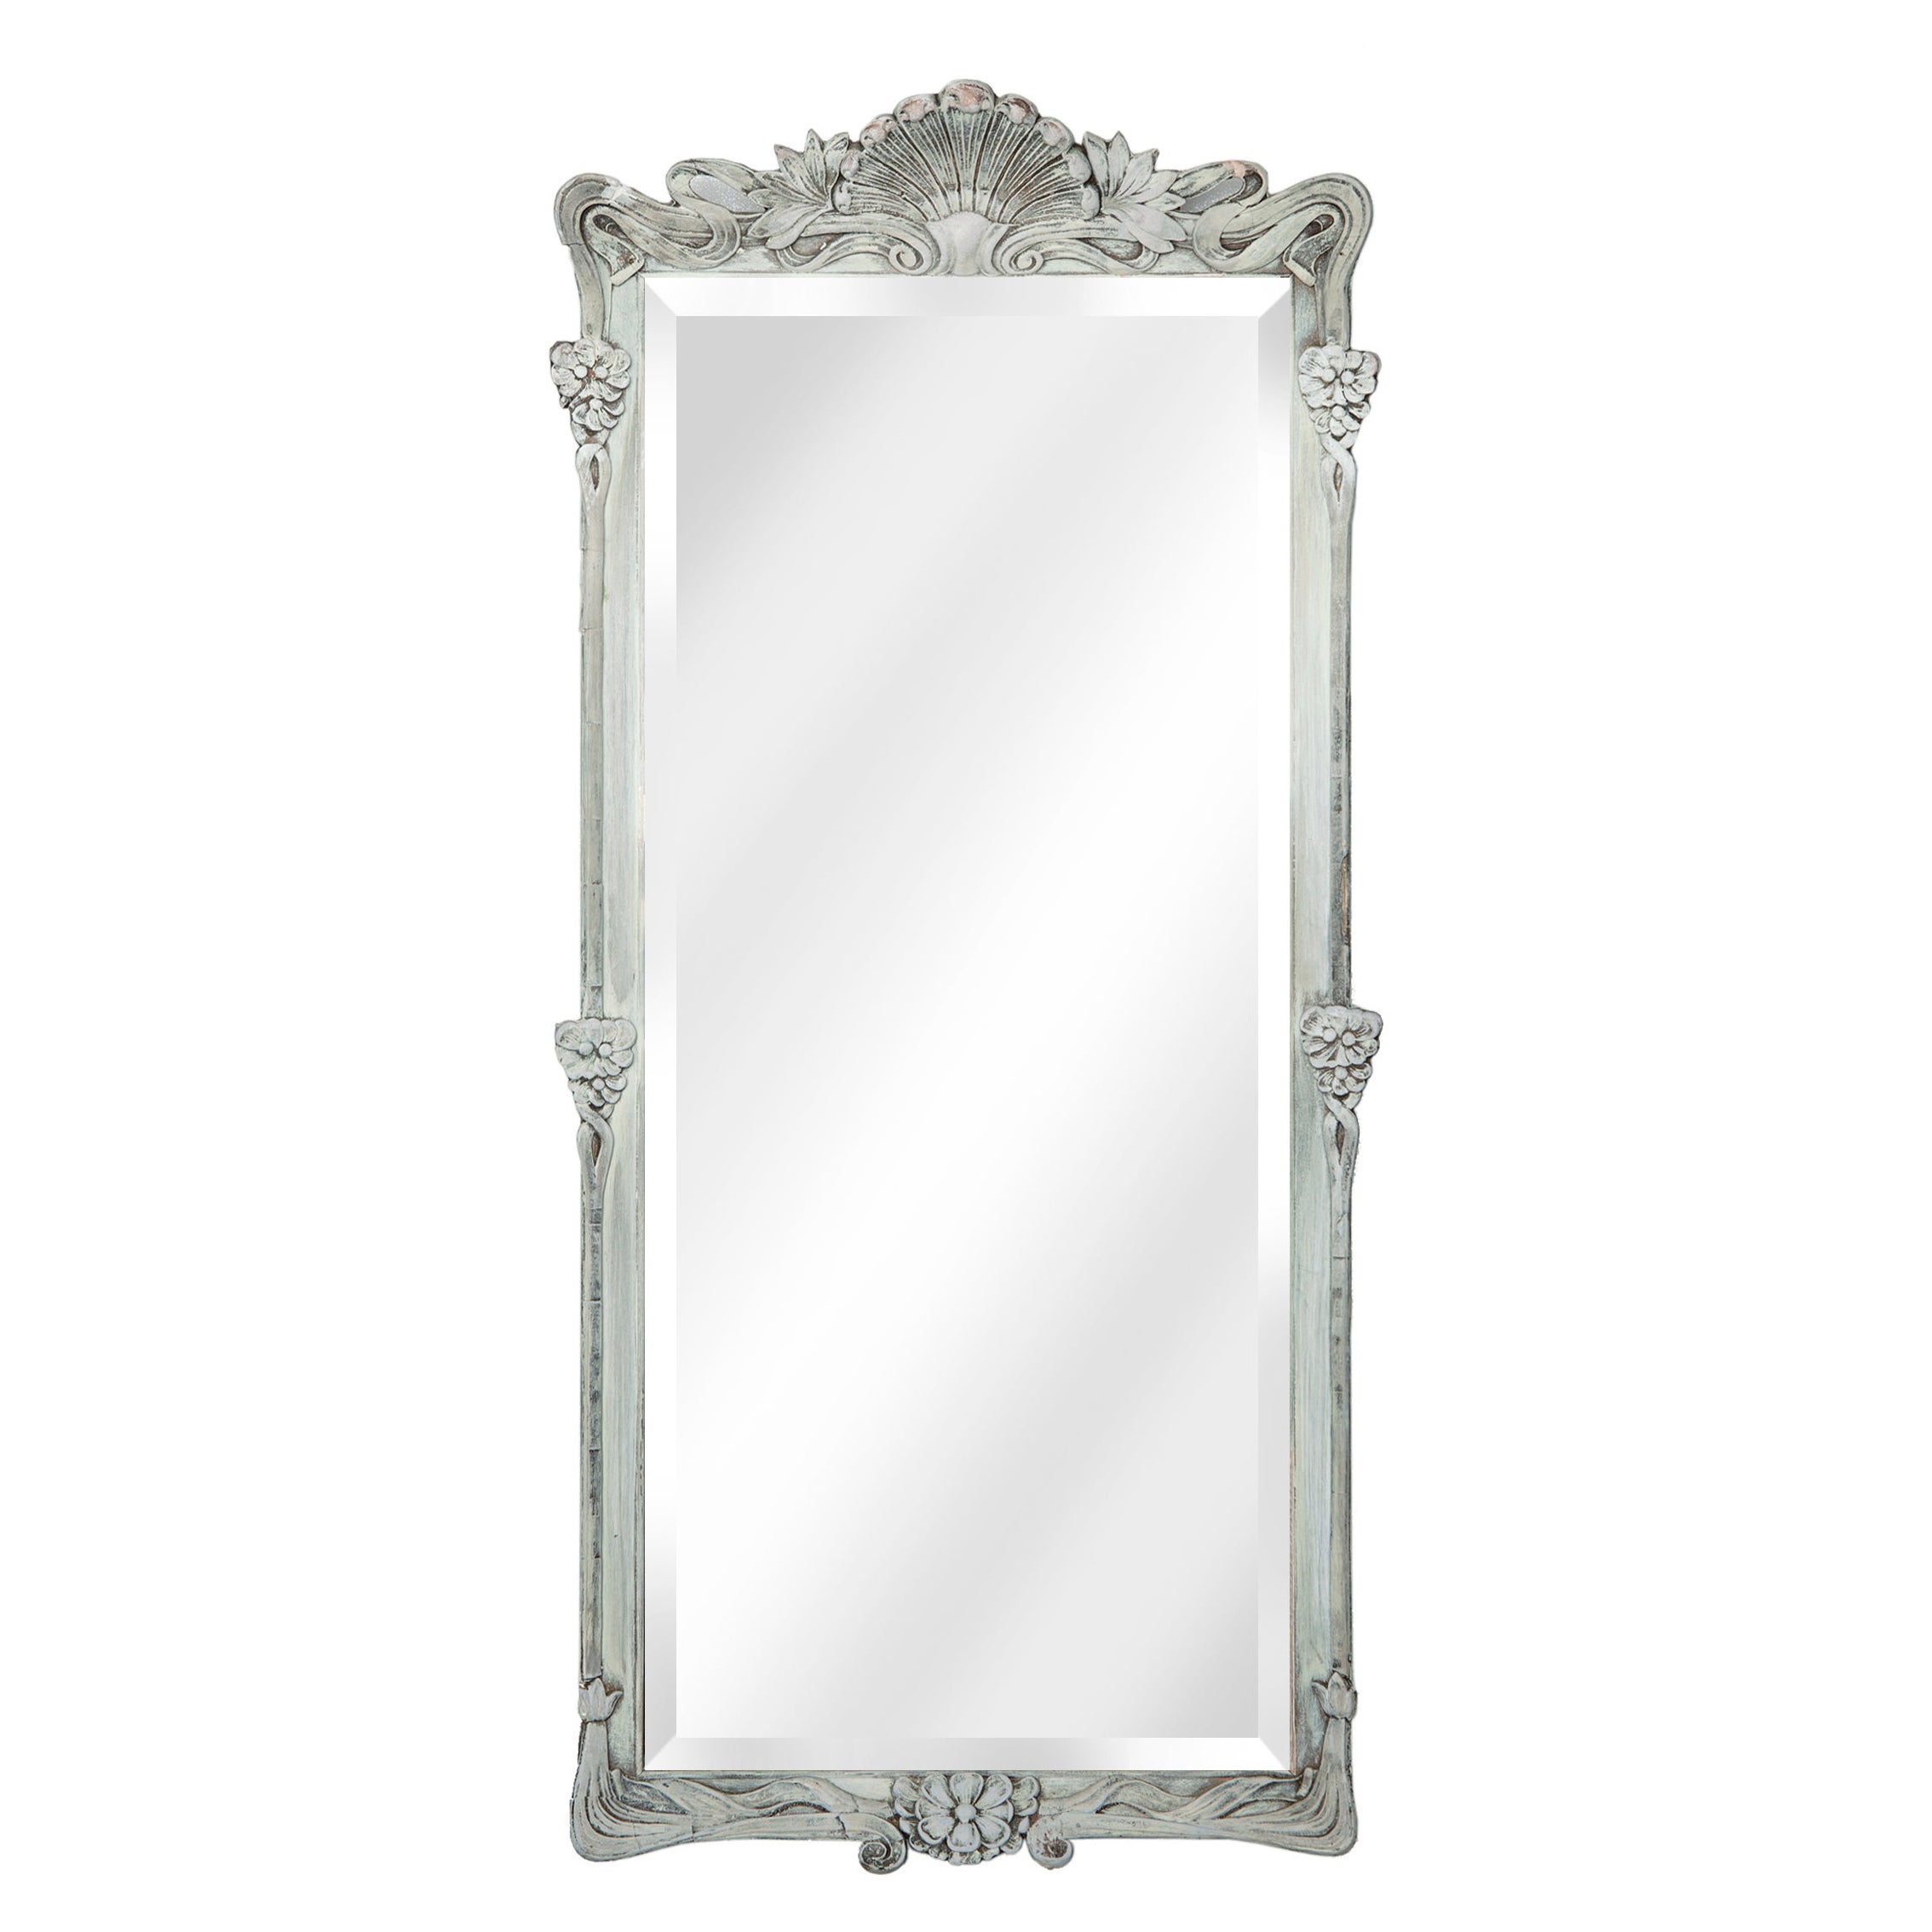 Slender Art Noveau Beveled Mirror For Sale